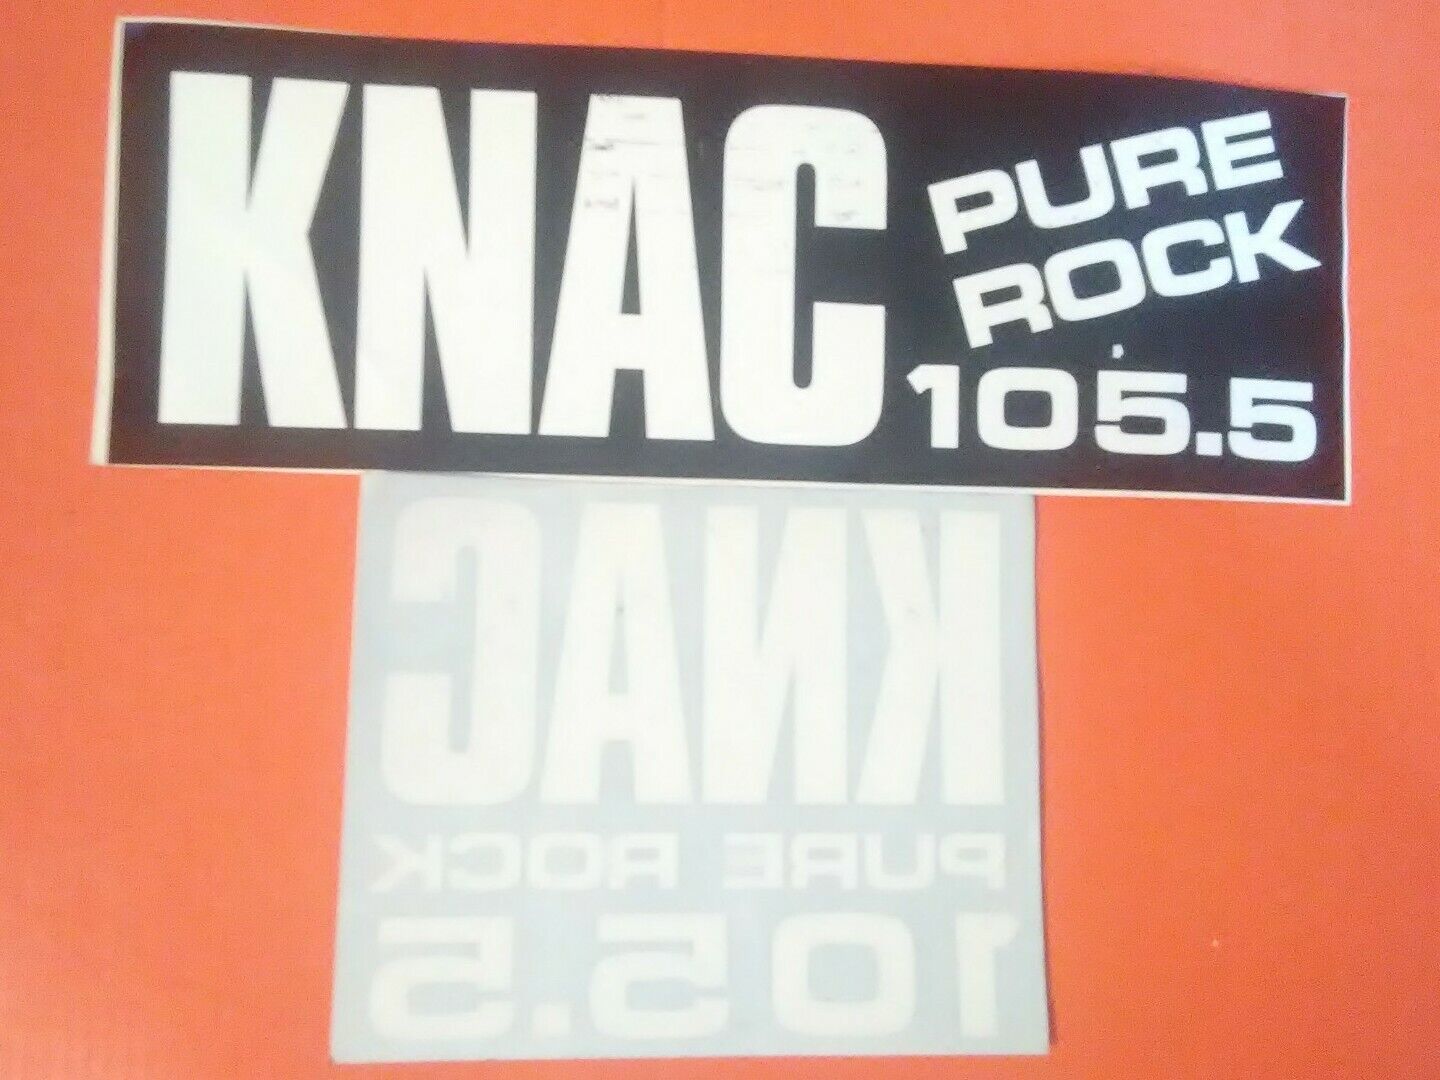 KNAC 105.5 Bumper Sticker Lot of 2